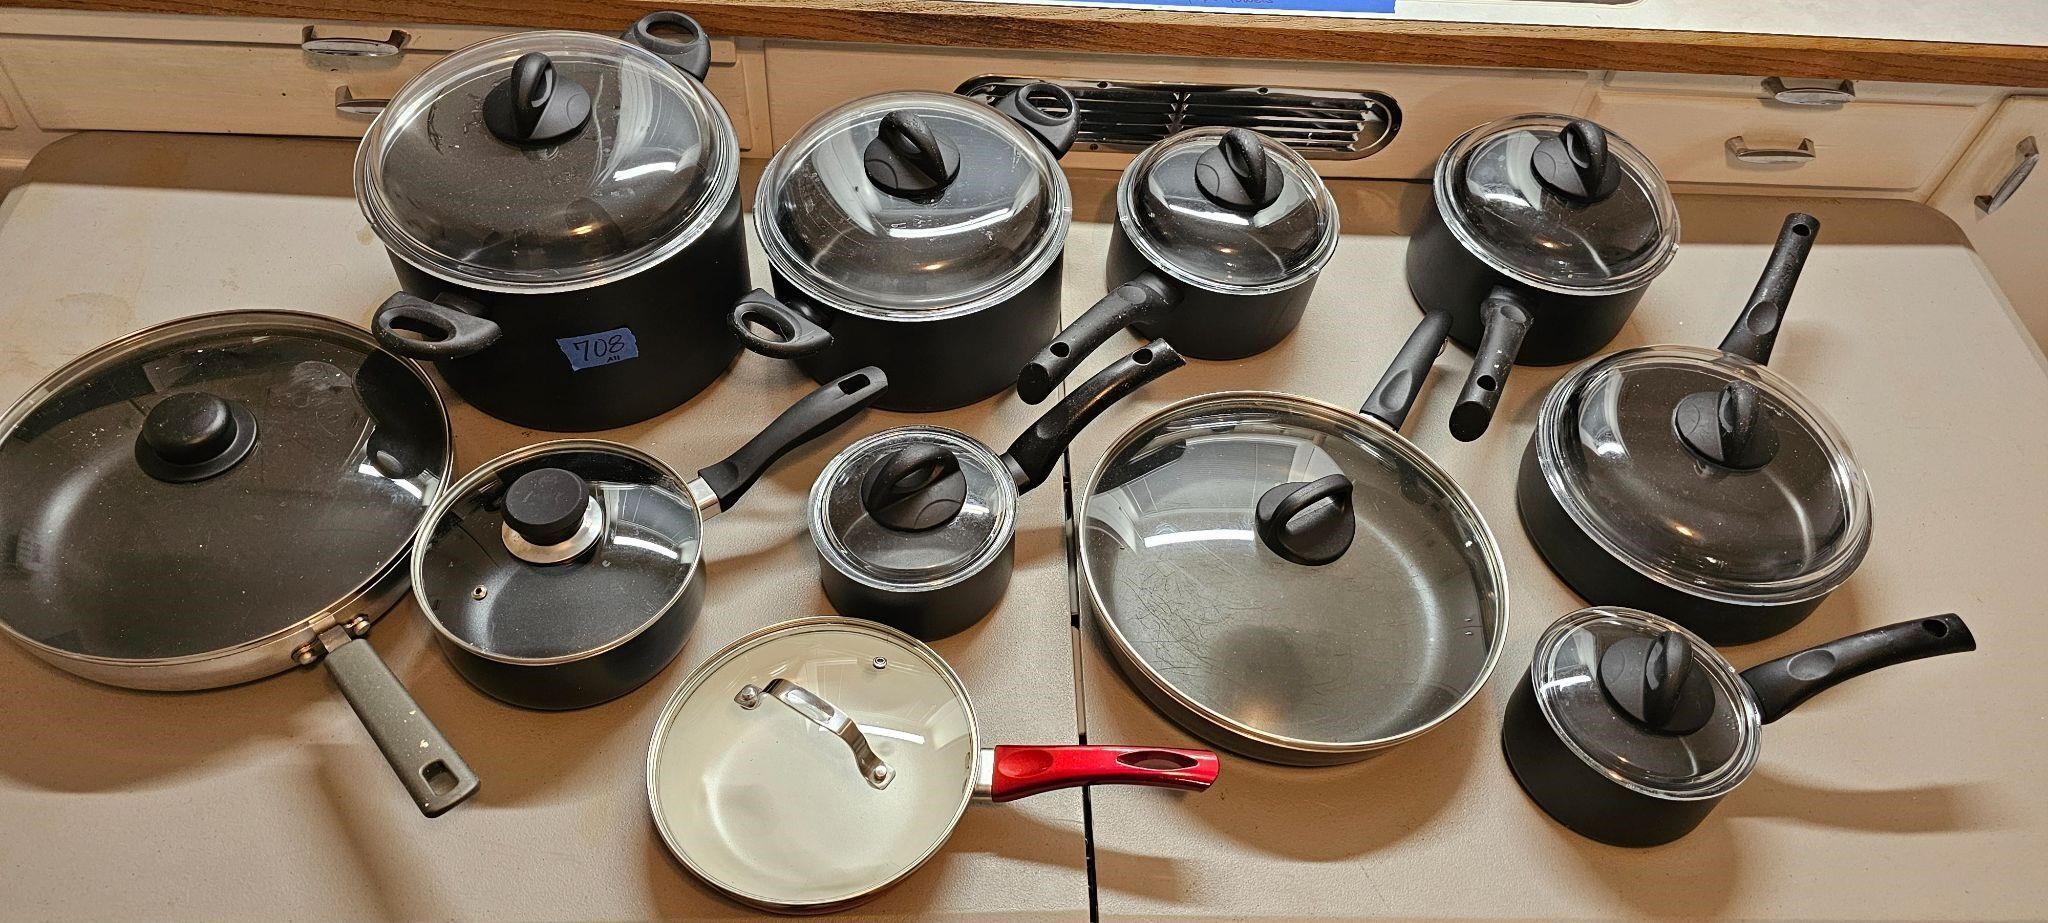 Pots and pans w/lids (11)